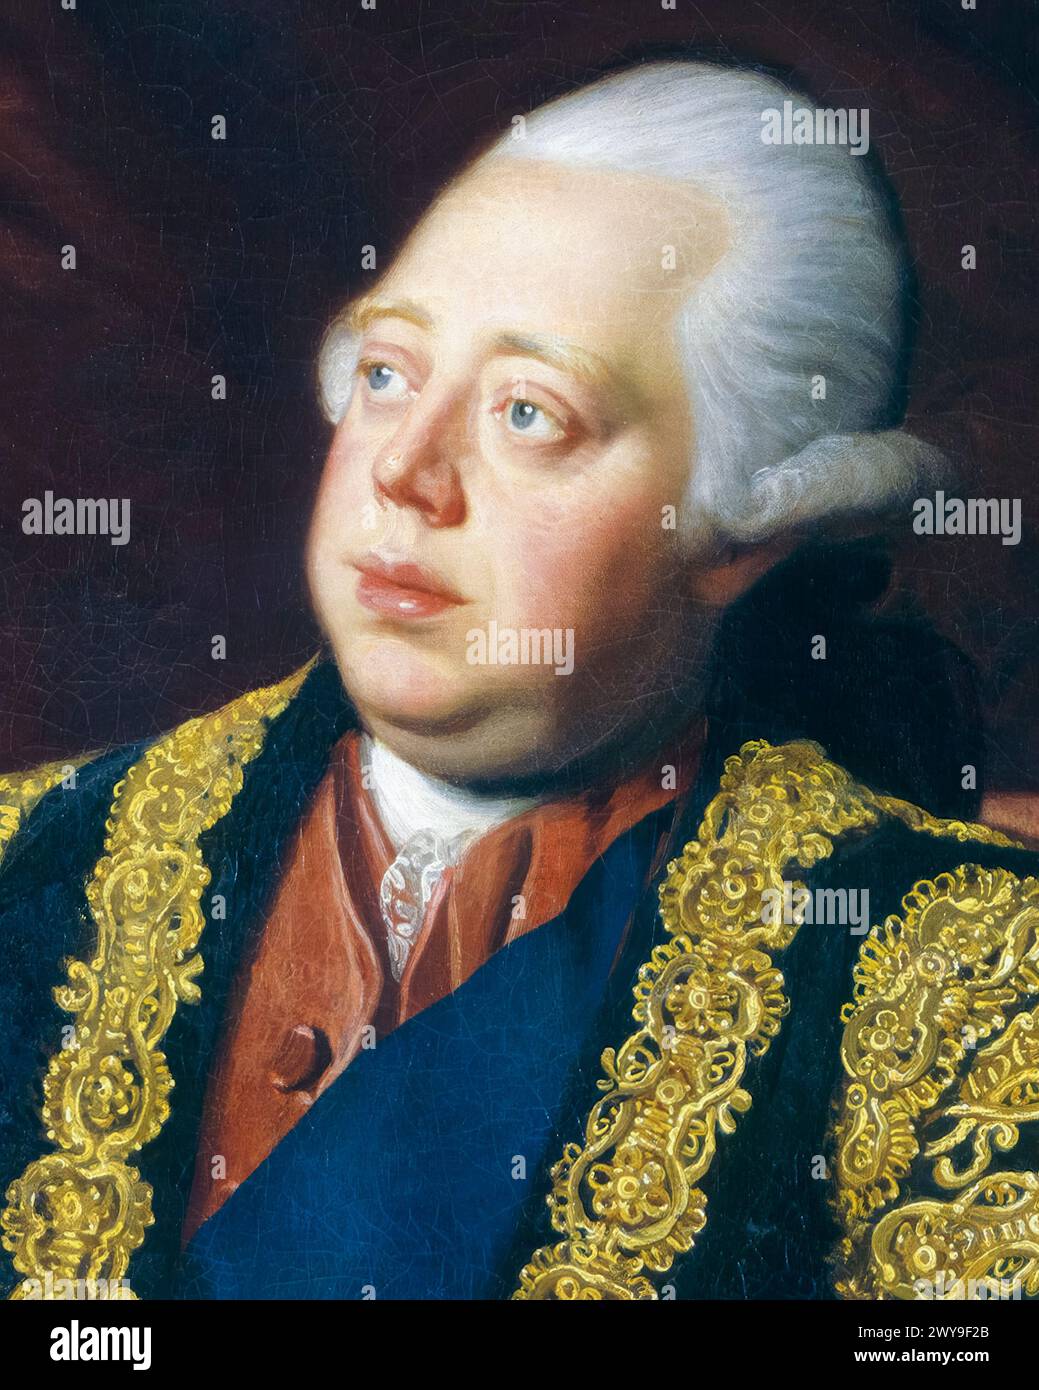 Frederick North, II conte di Guilford (1732-1792), alias Lord North, primo ministro della Gran Bretagna 1770-1782, ritratto a olio su tela di Sir Nathaniel Dance-Holland, 1773-1774 Foto Stock